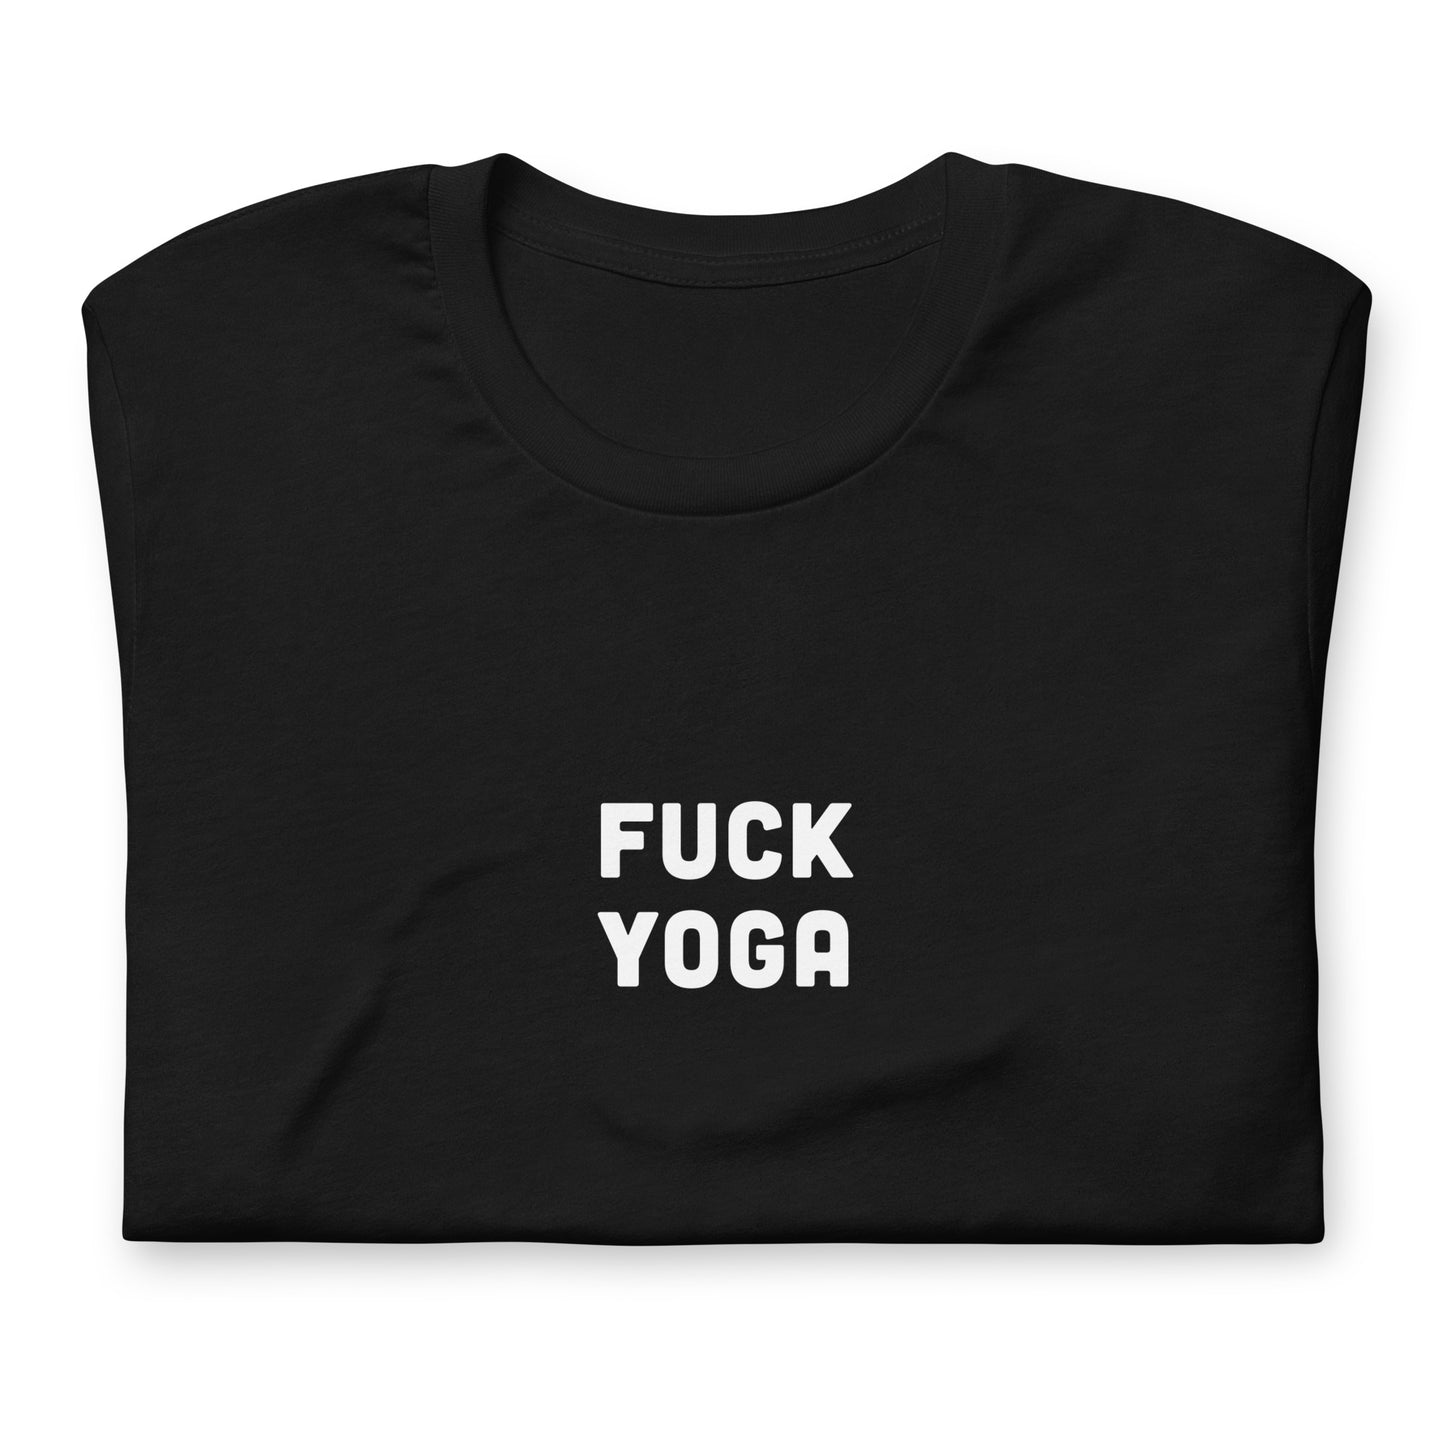 Fuck Yoga T-Shirt Size M Color Black